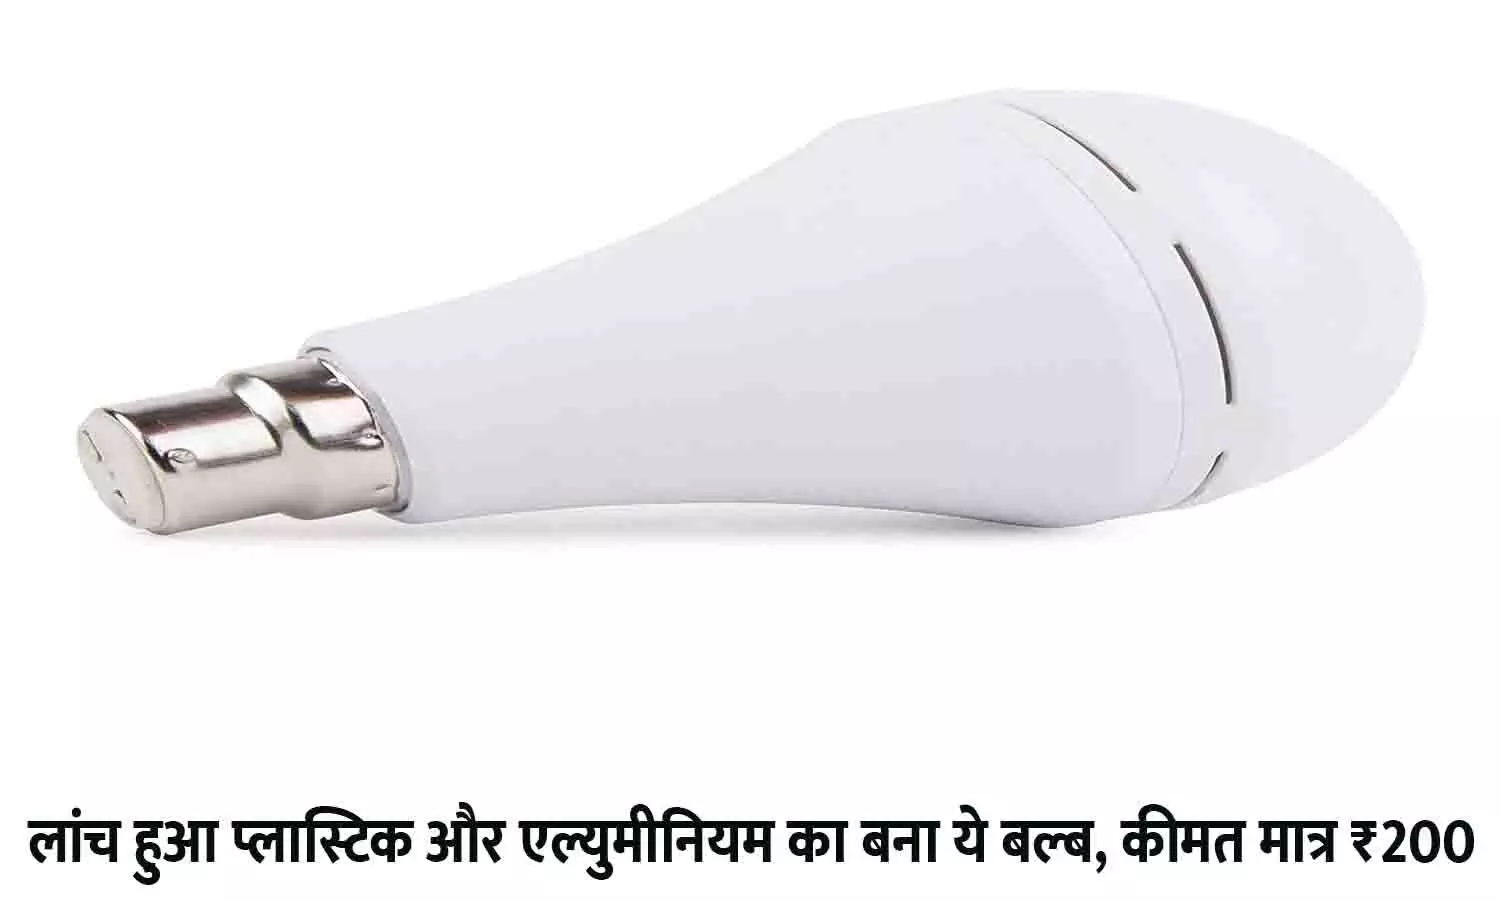 LED Inverter Bulb Price in India 2022: लांच हुआ प्लास्टिक और एल्युमीनियम का बना ये बल्ब, कीमत मात्र ₹200, ठंडी के मौसम में धड़ाधड़ खरीद रहे लोग